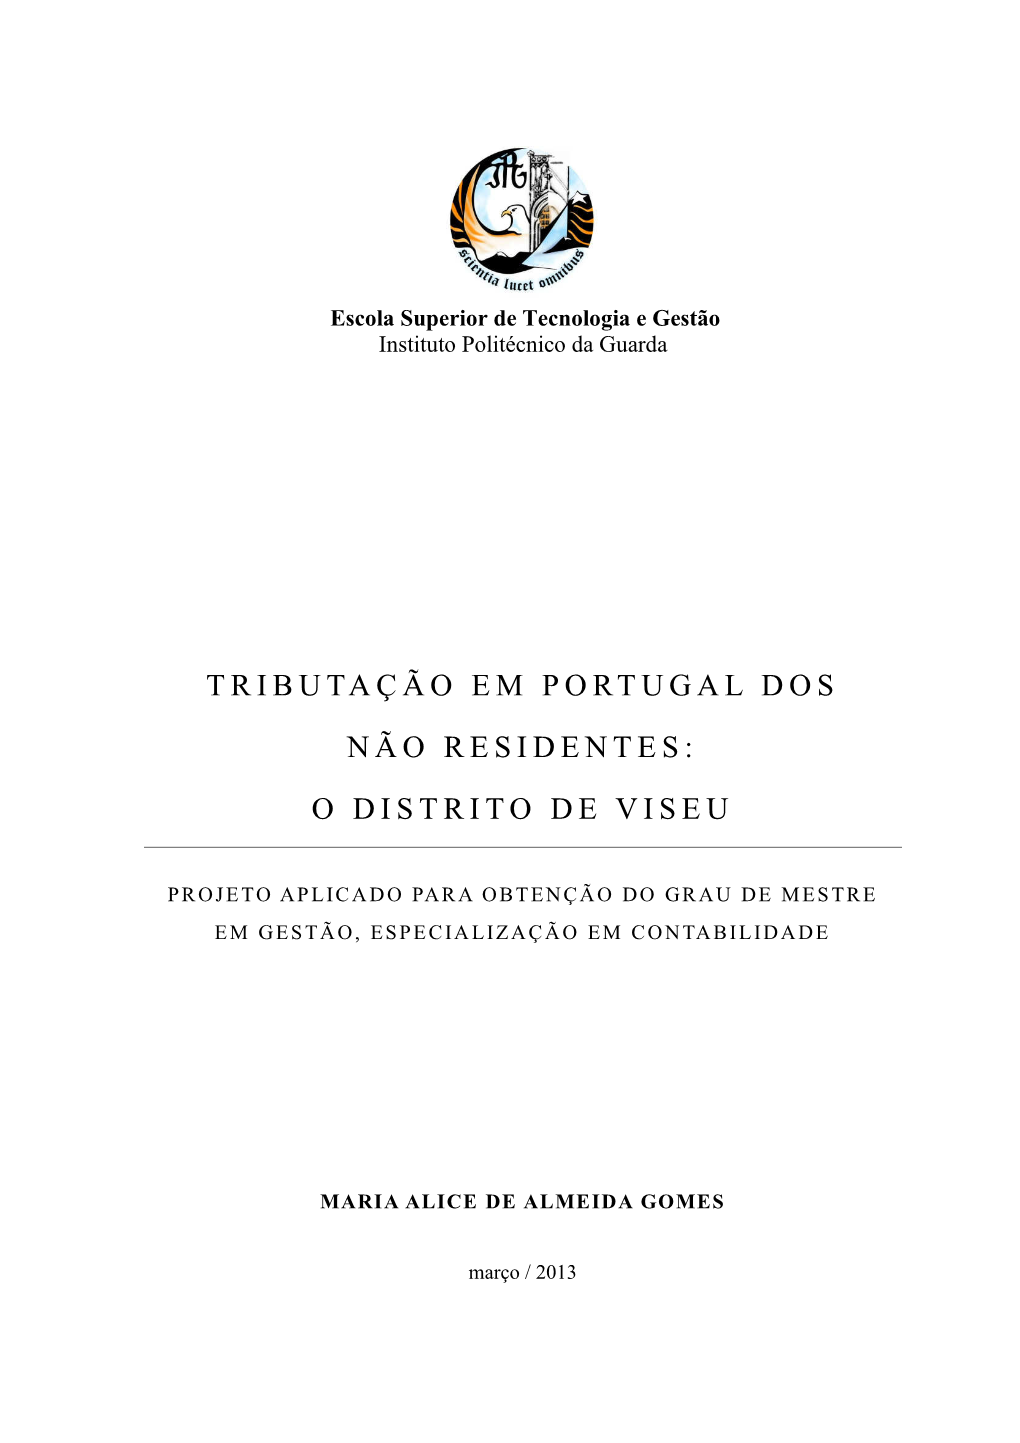 Tributação Em Portugal Dos Não Residentes: O Distrito De Viseu